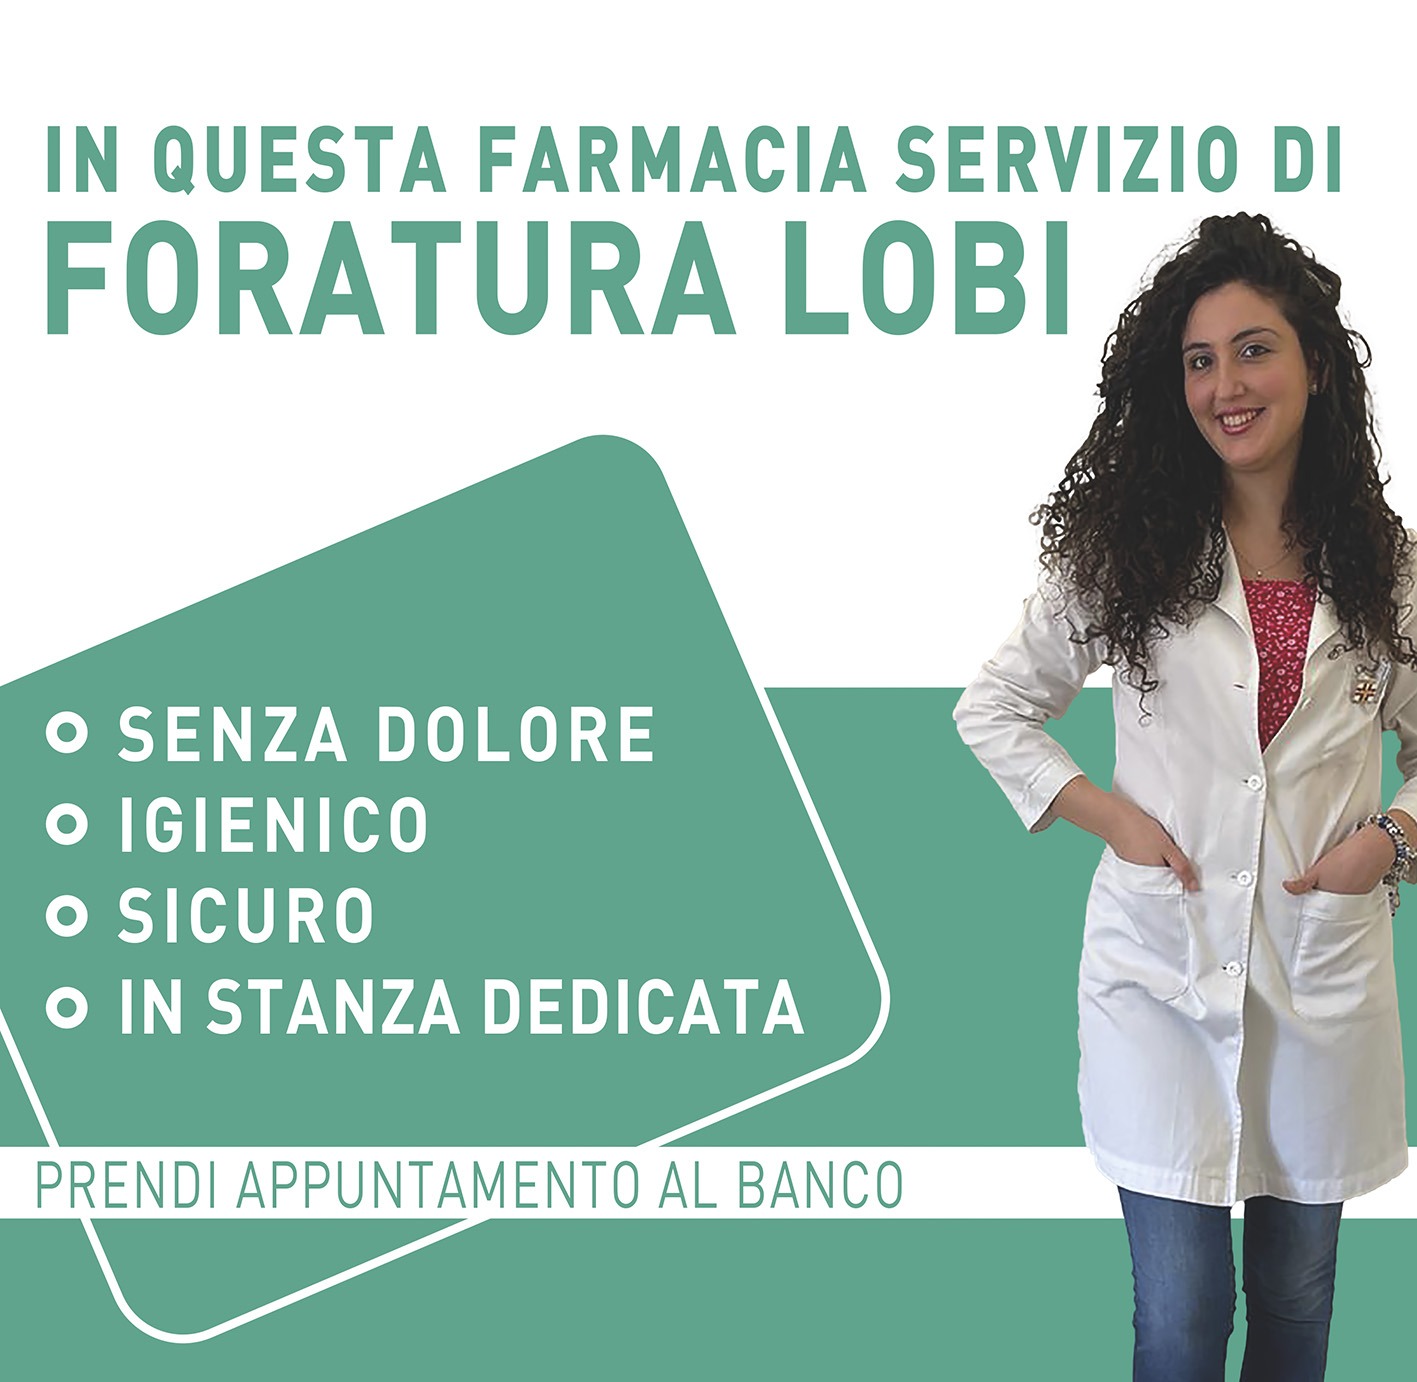 Foratura lobi – Farmacia Vesuvio Genova